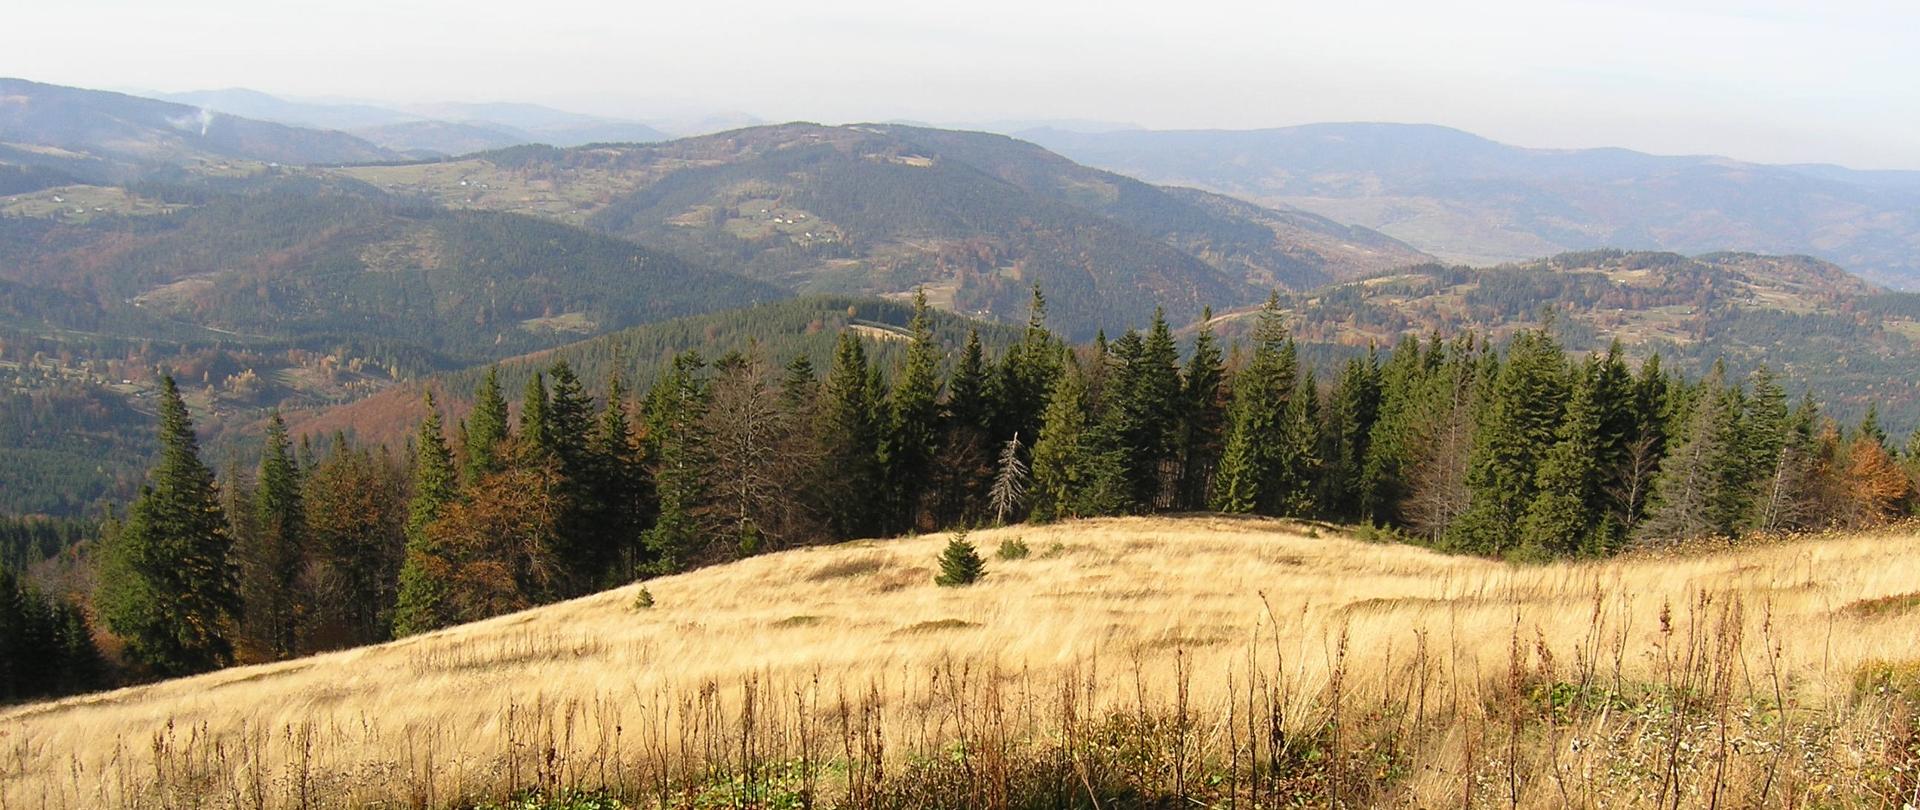 Zdjęcie przedstawia fragment rezerwatu: łąkę na zboczu góry, za nią linie lasu, w oddawali widok gór